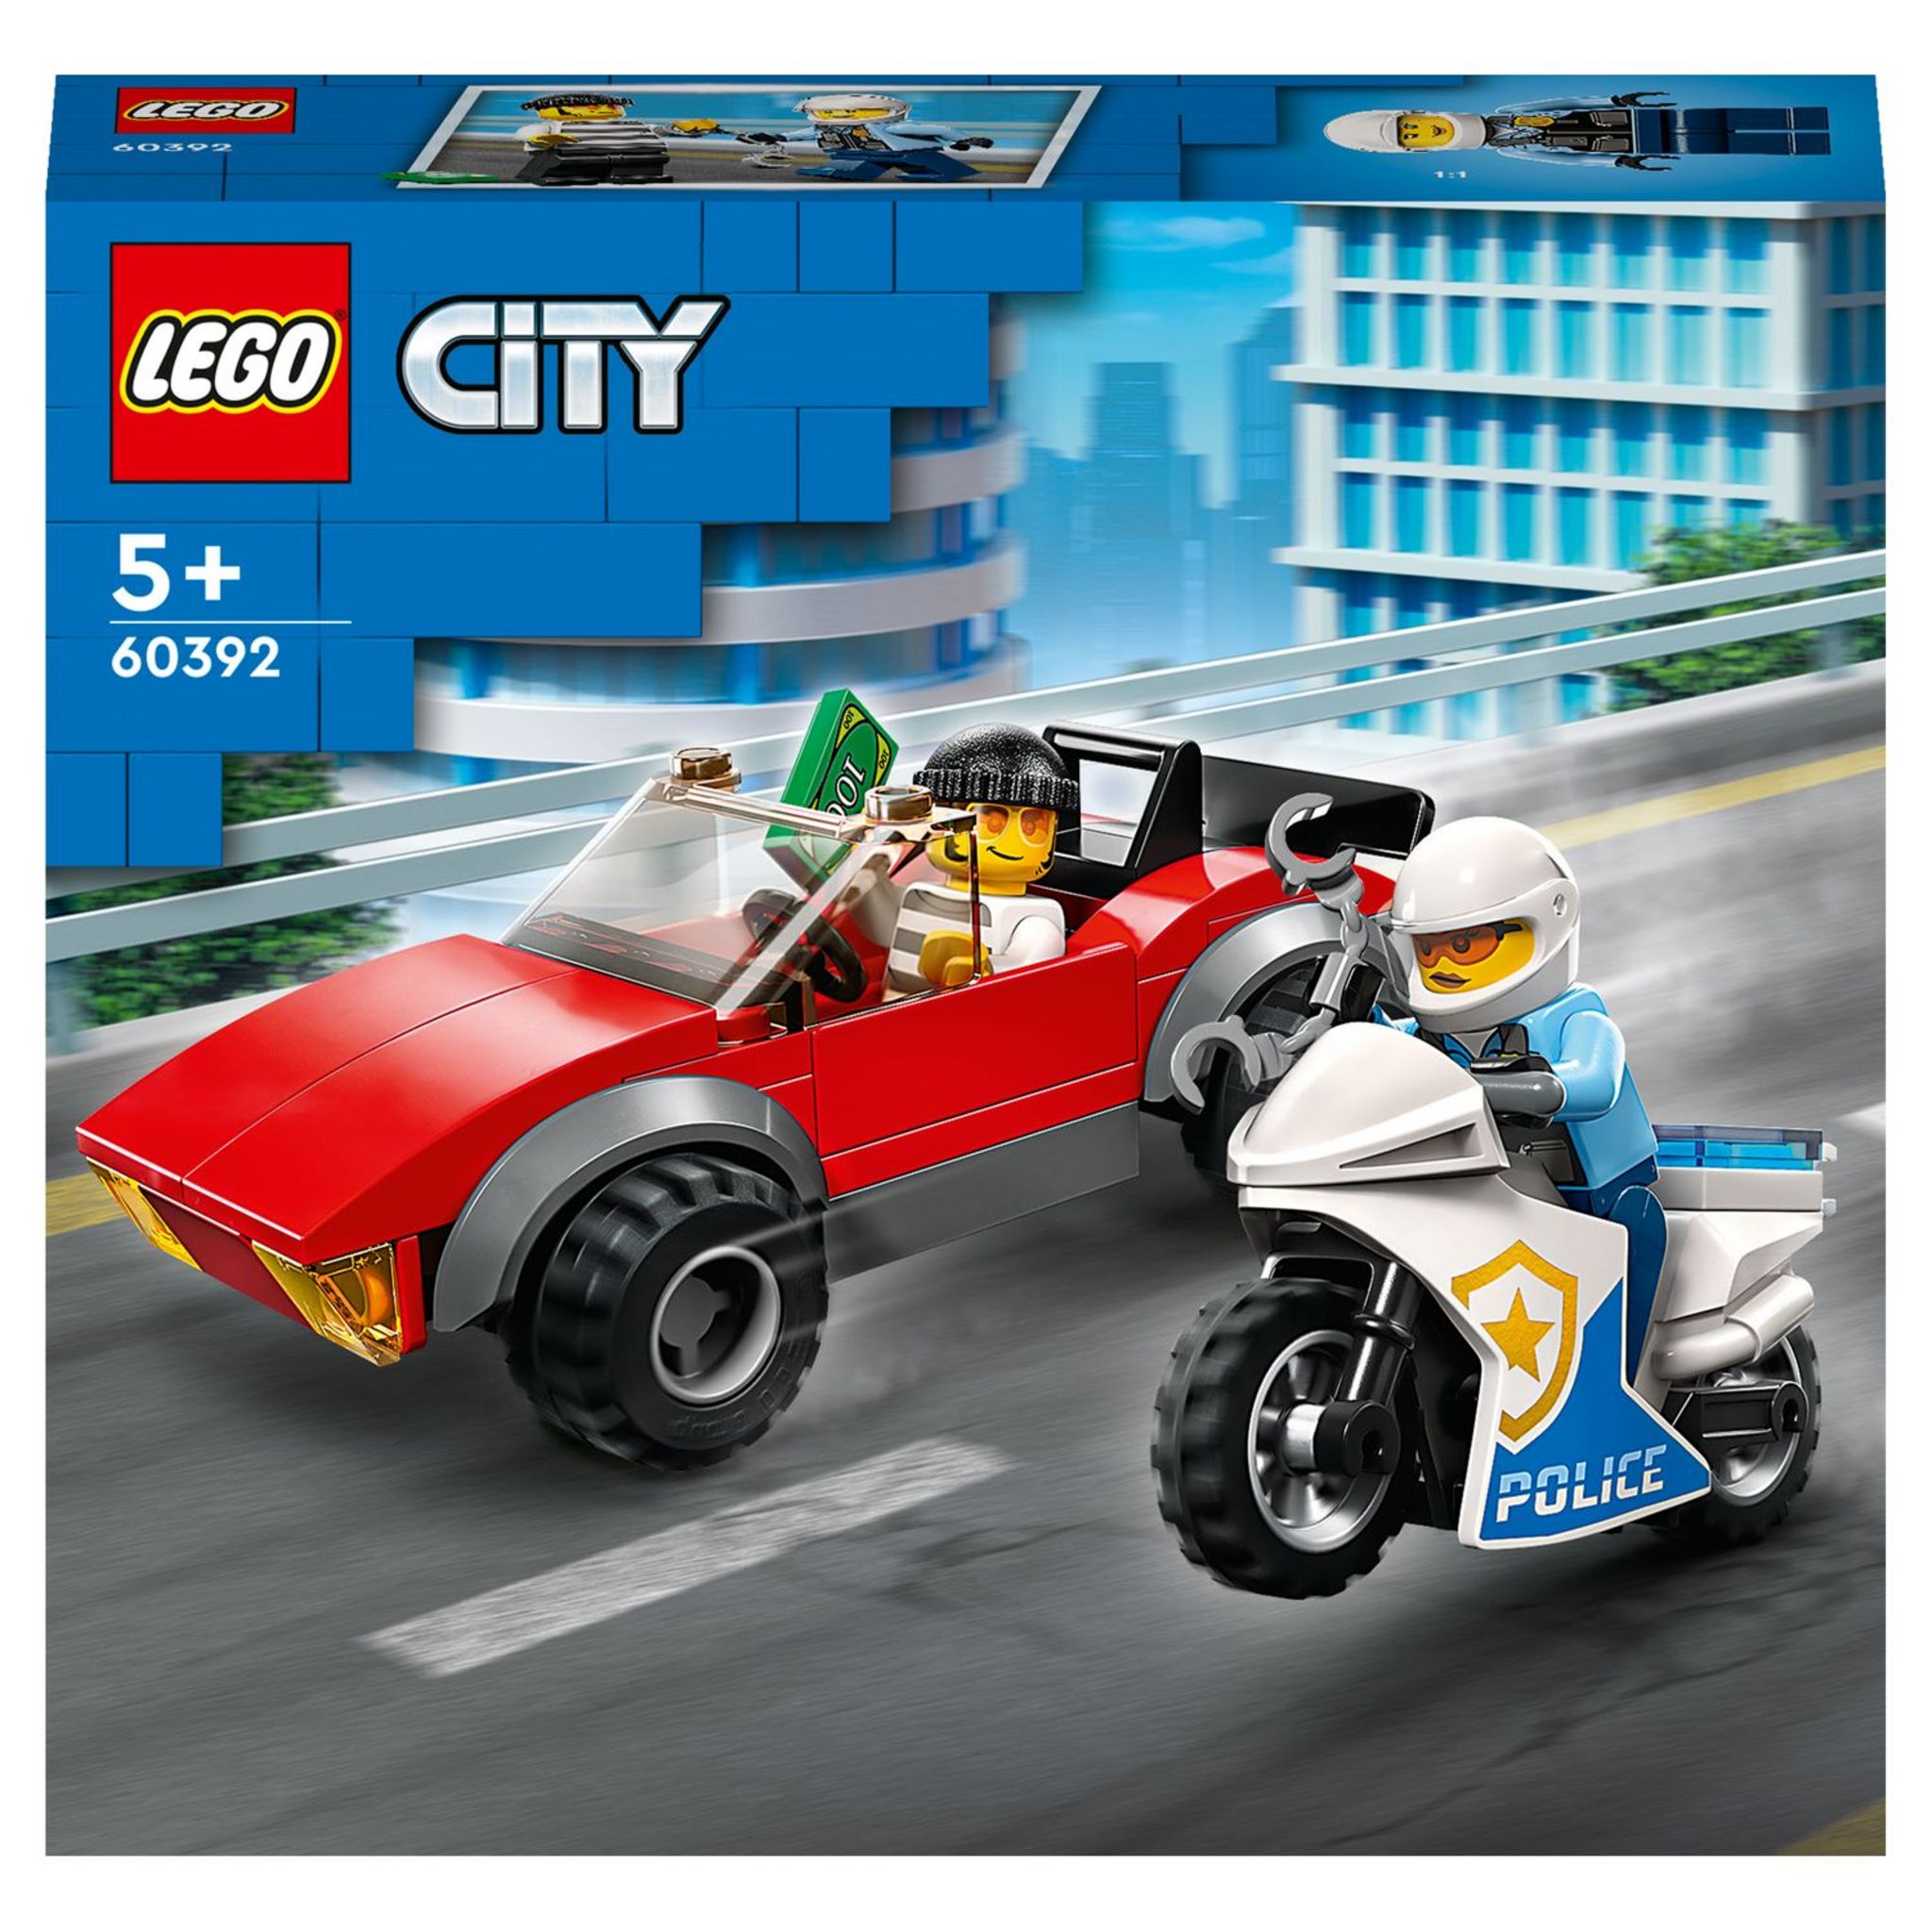 LEGO City 60372 pas cher, Le centre d'entraînement de la police